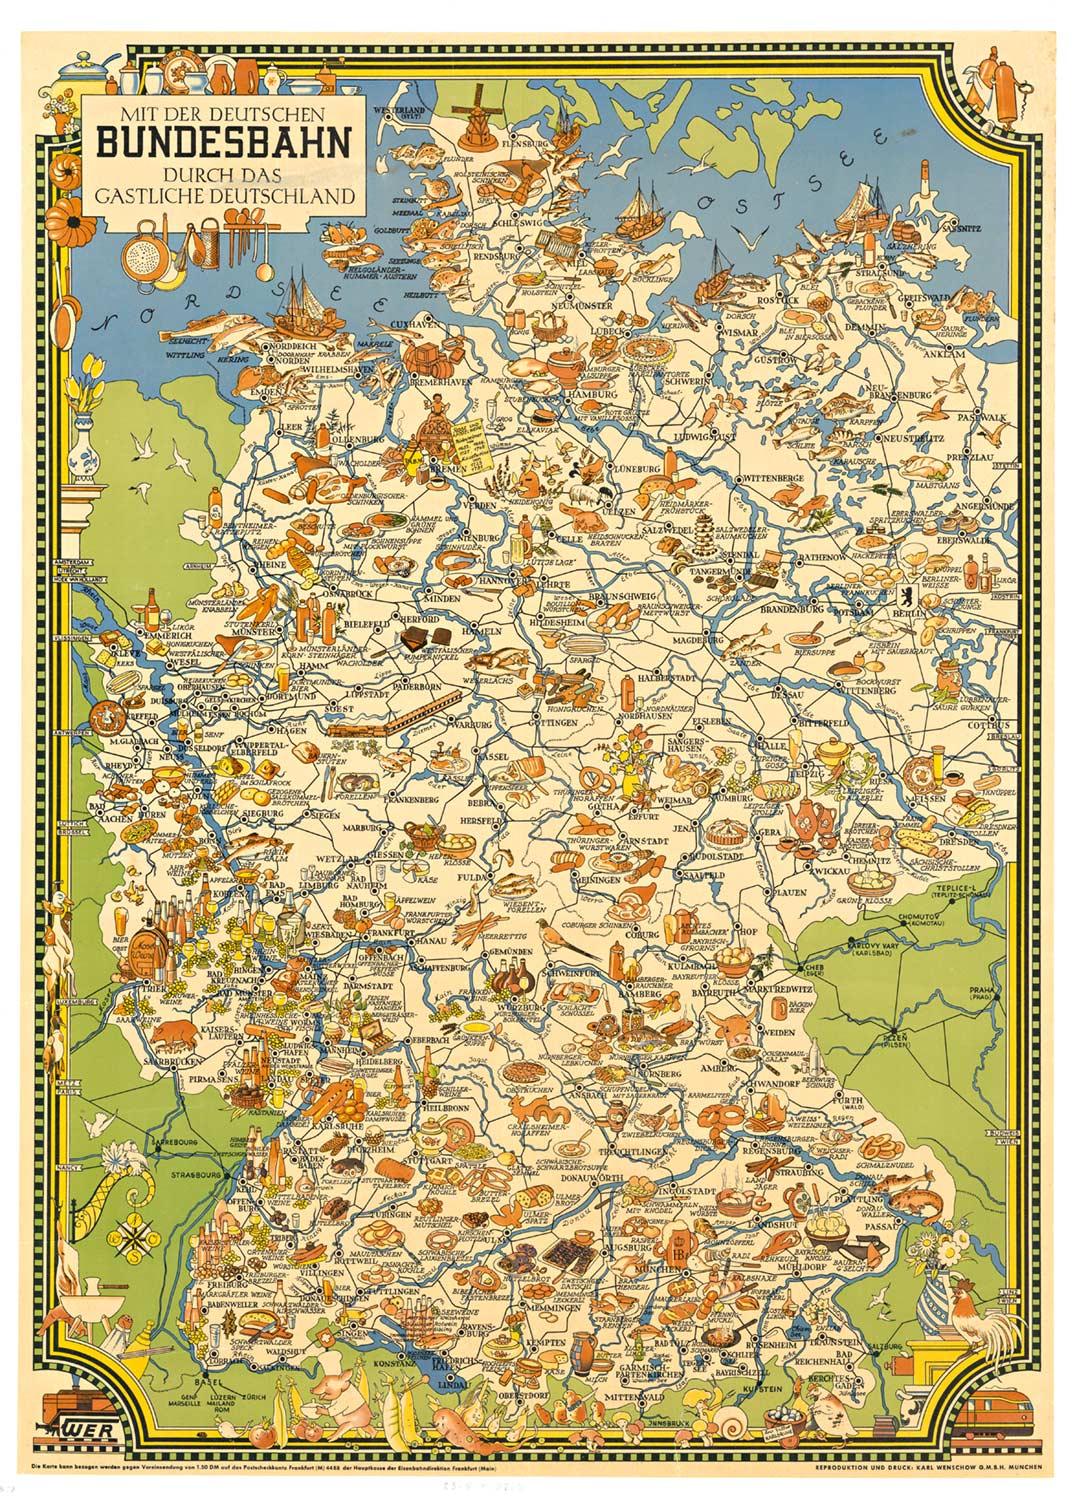 Original 'Bundesbahn durch das Gastliches Deutschland' vintage poster